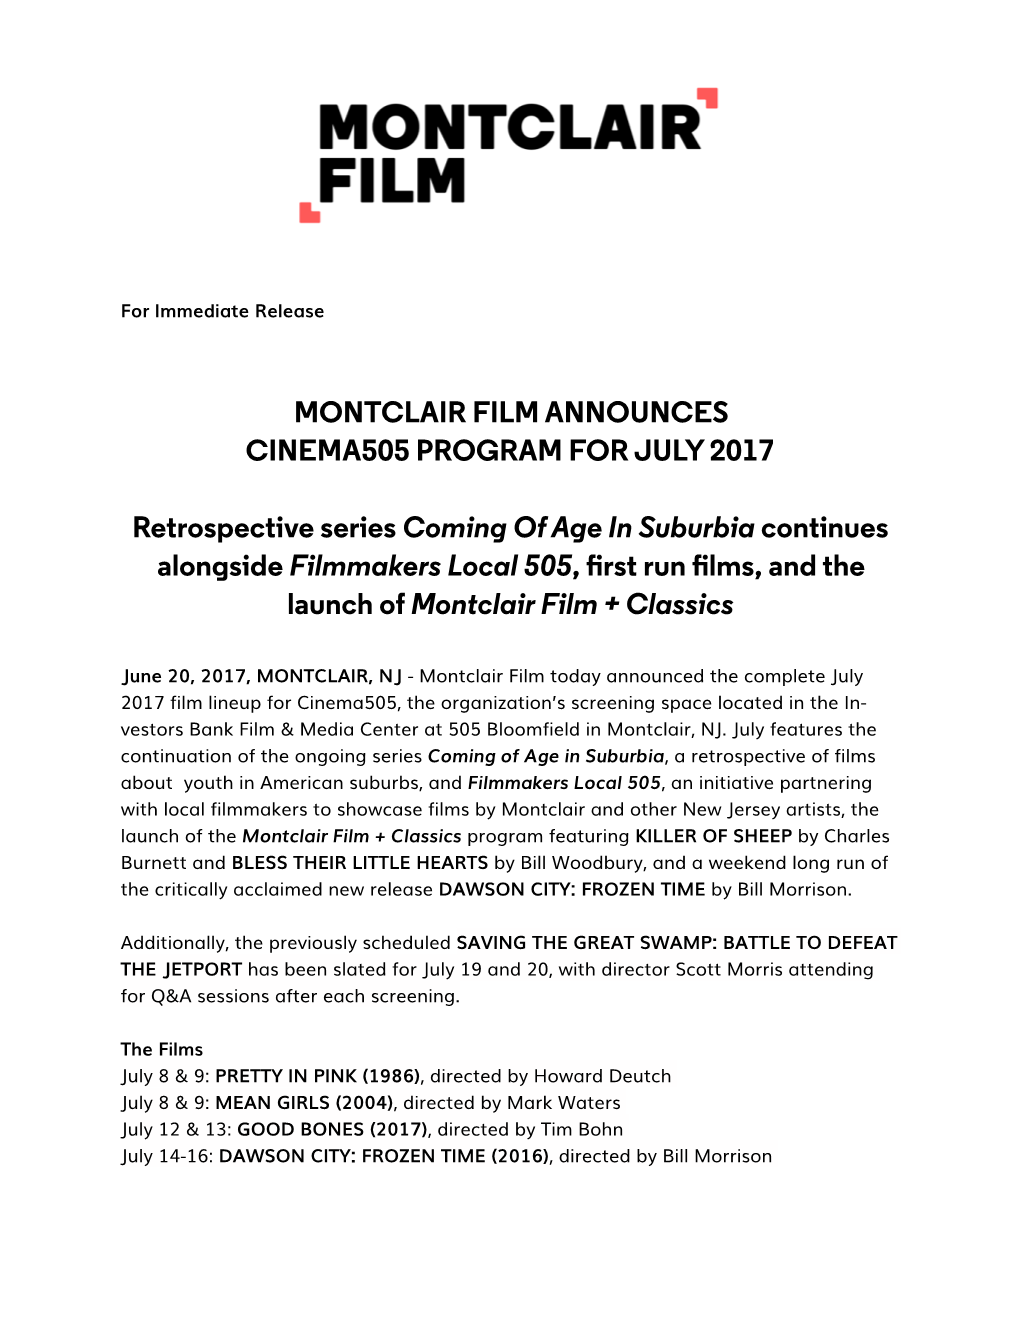 Montclair Film Announces July 2017 Lineup at Cinema505